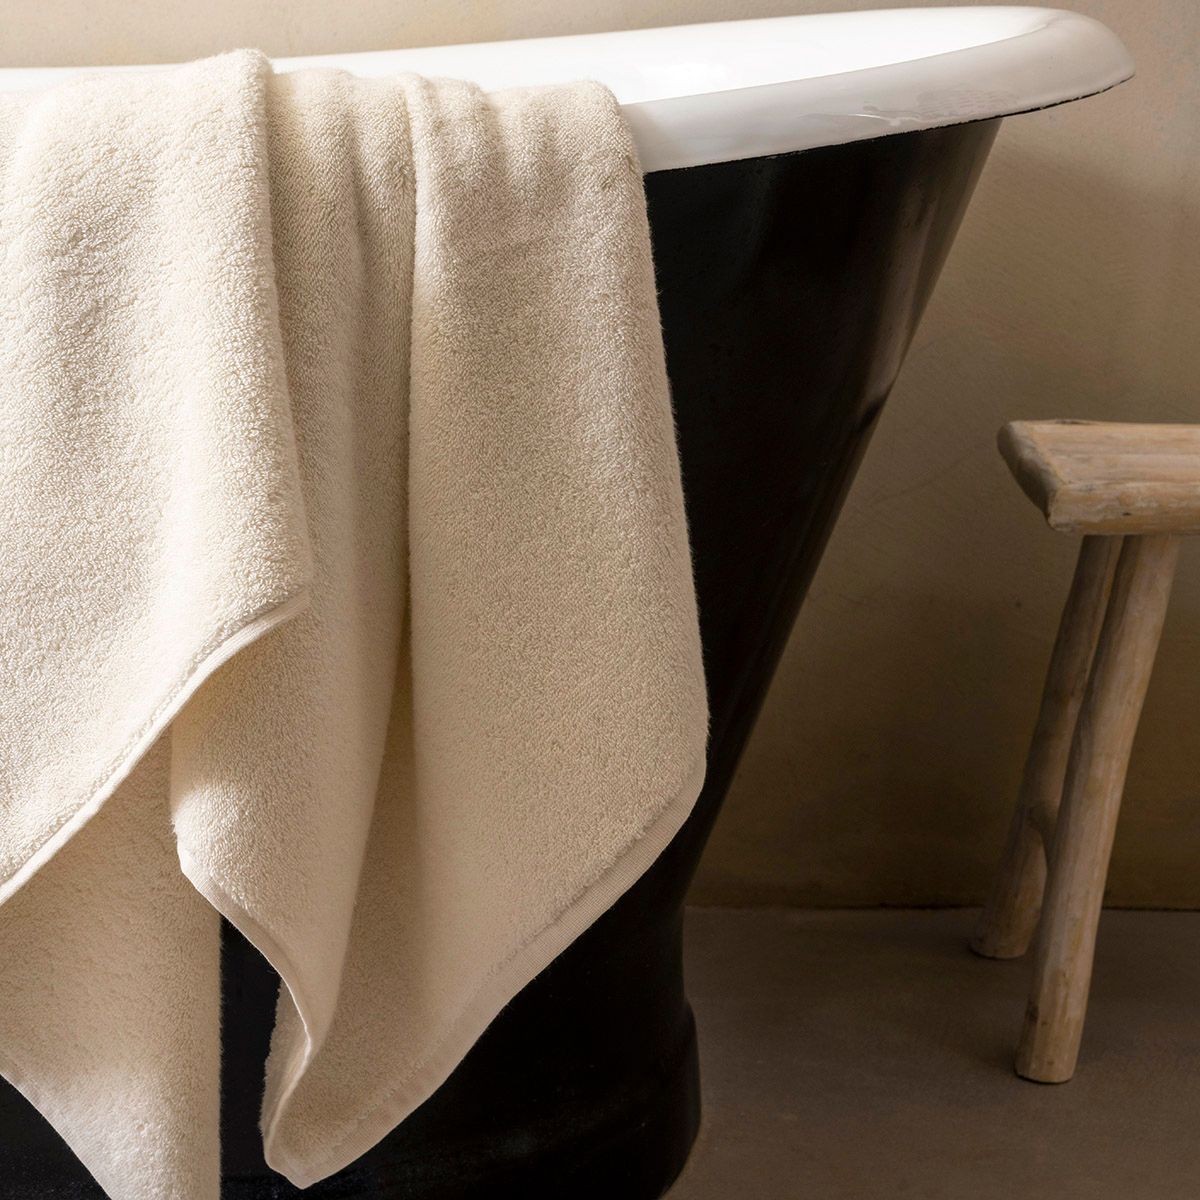 Bath Towels - Argile Ecru Bath Towels by Le Jacquard Français | Luxury Bath Linens